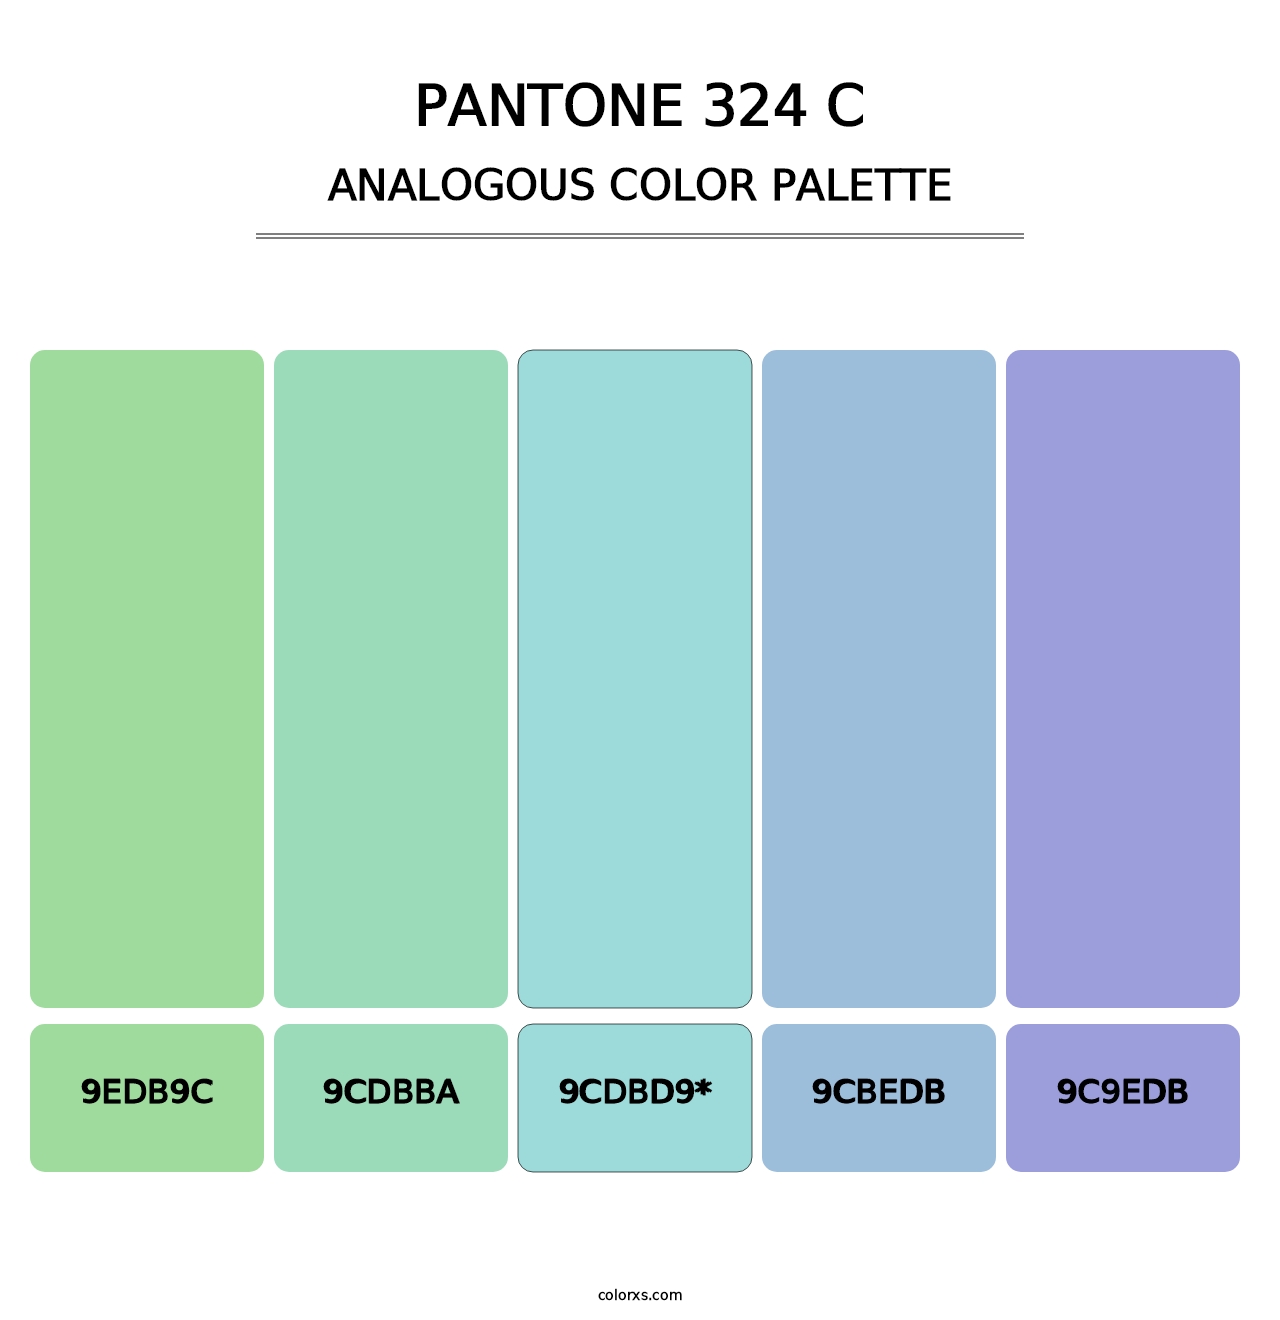 PANTONE 324 C - Analogous Color Palette